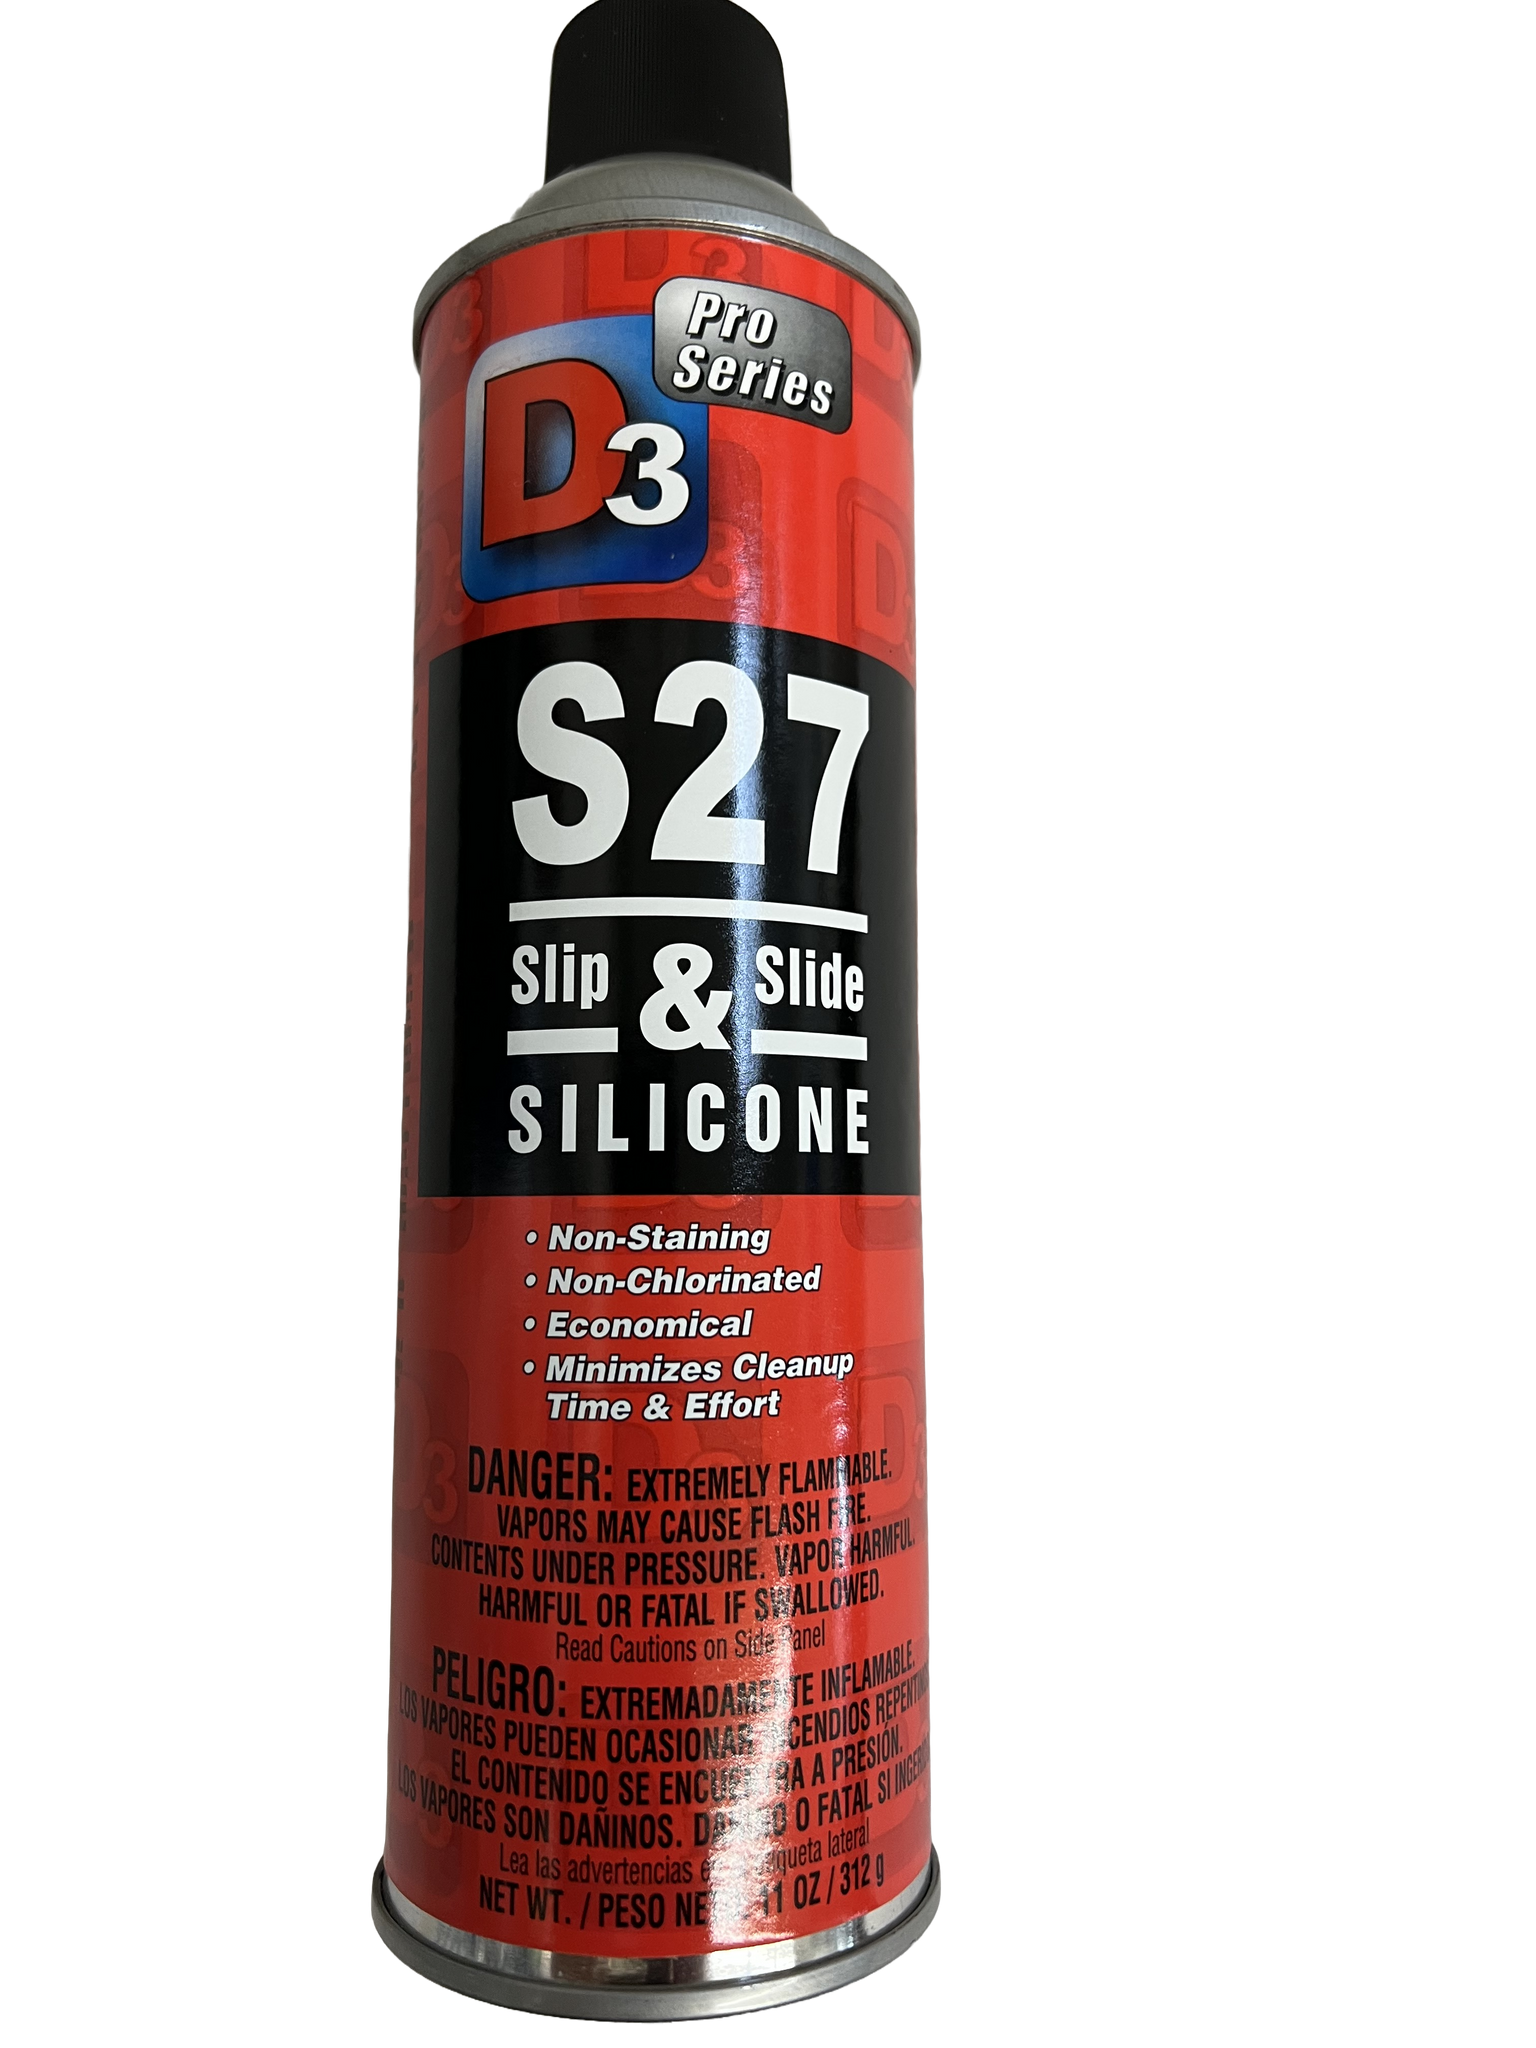 Bondseal Silicone spray 17oz single can.